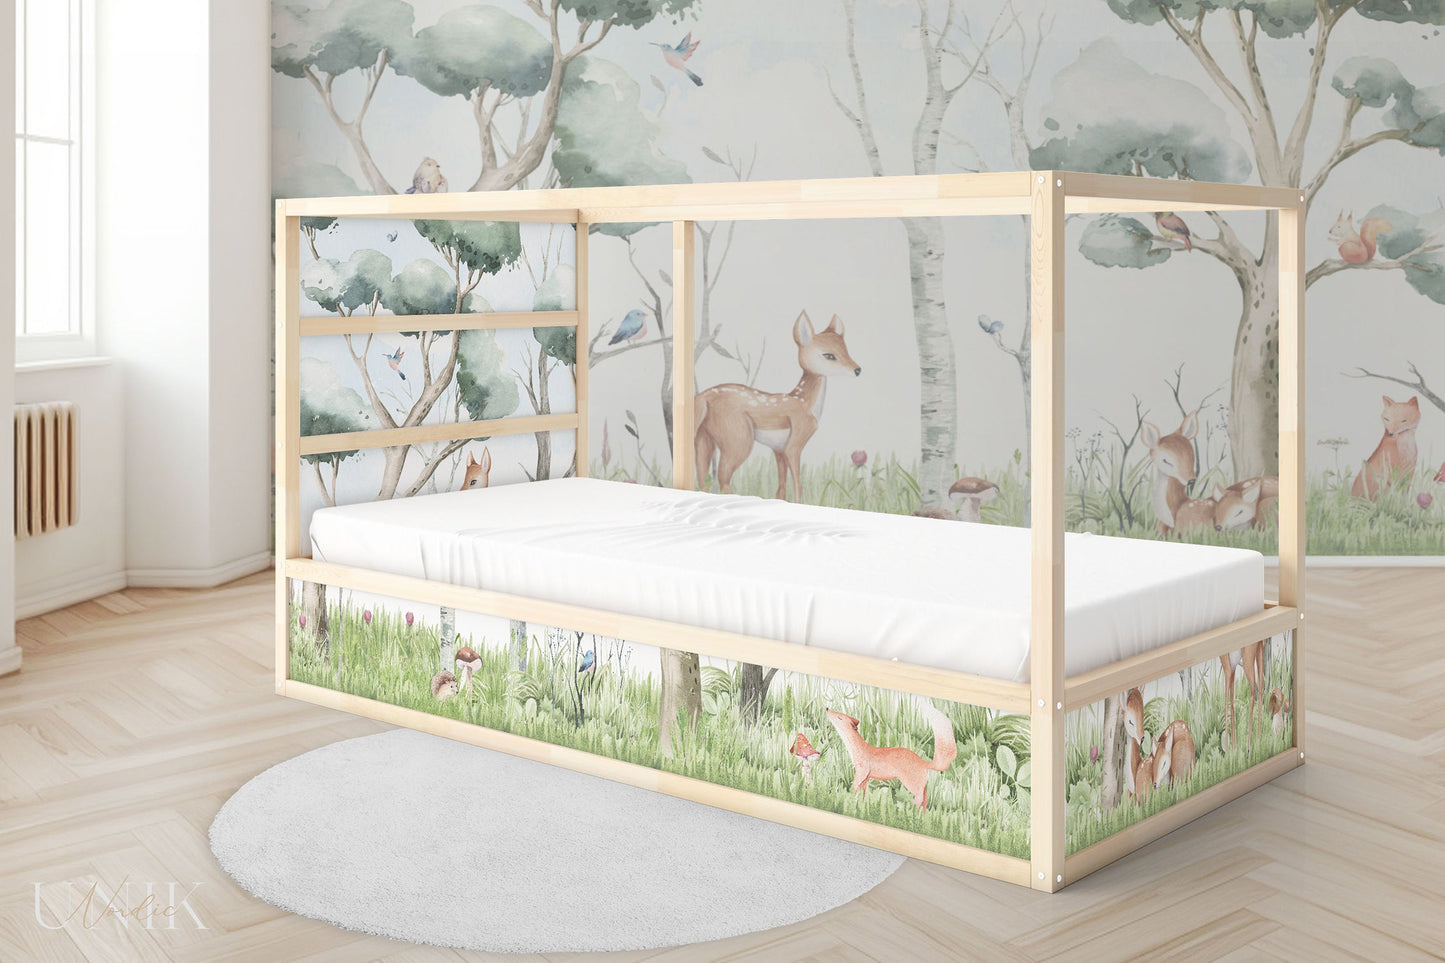 IKEA Kura Bed Sticker Set - Forest Animals Landscape